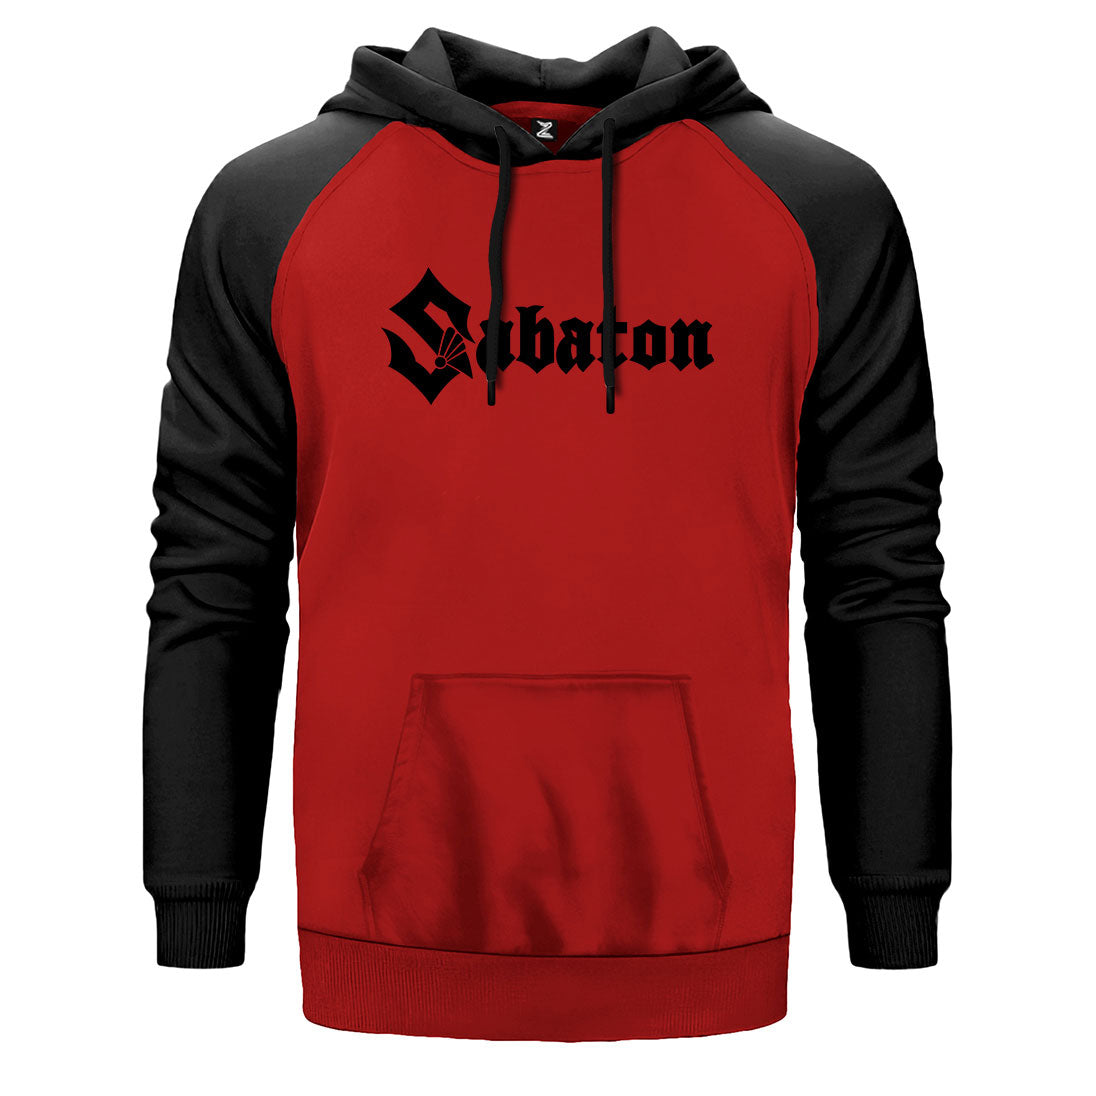 Sabaton Logo Çift Renk Reglan Kol Sweatshirt